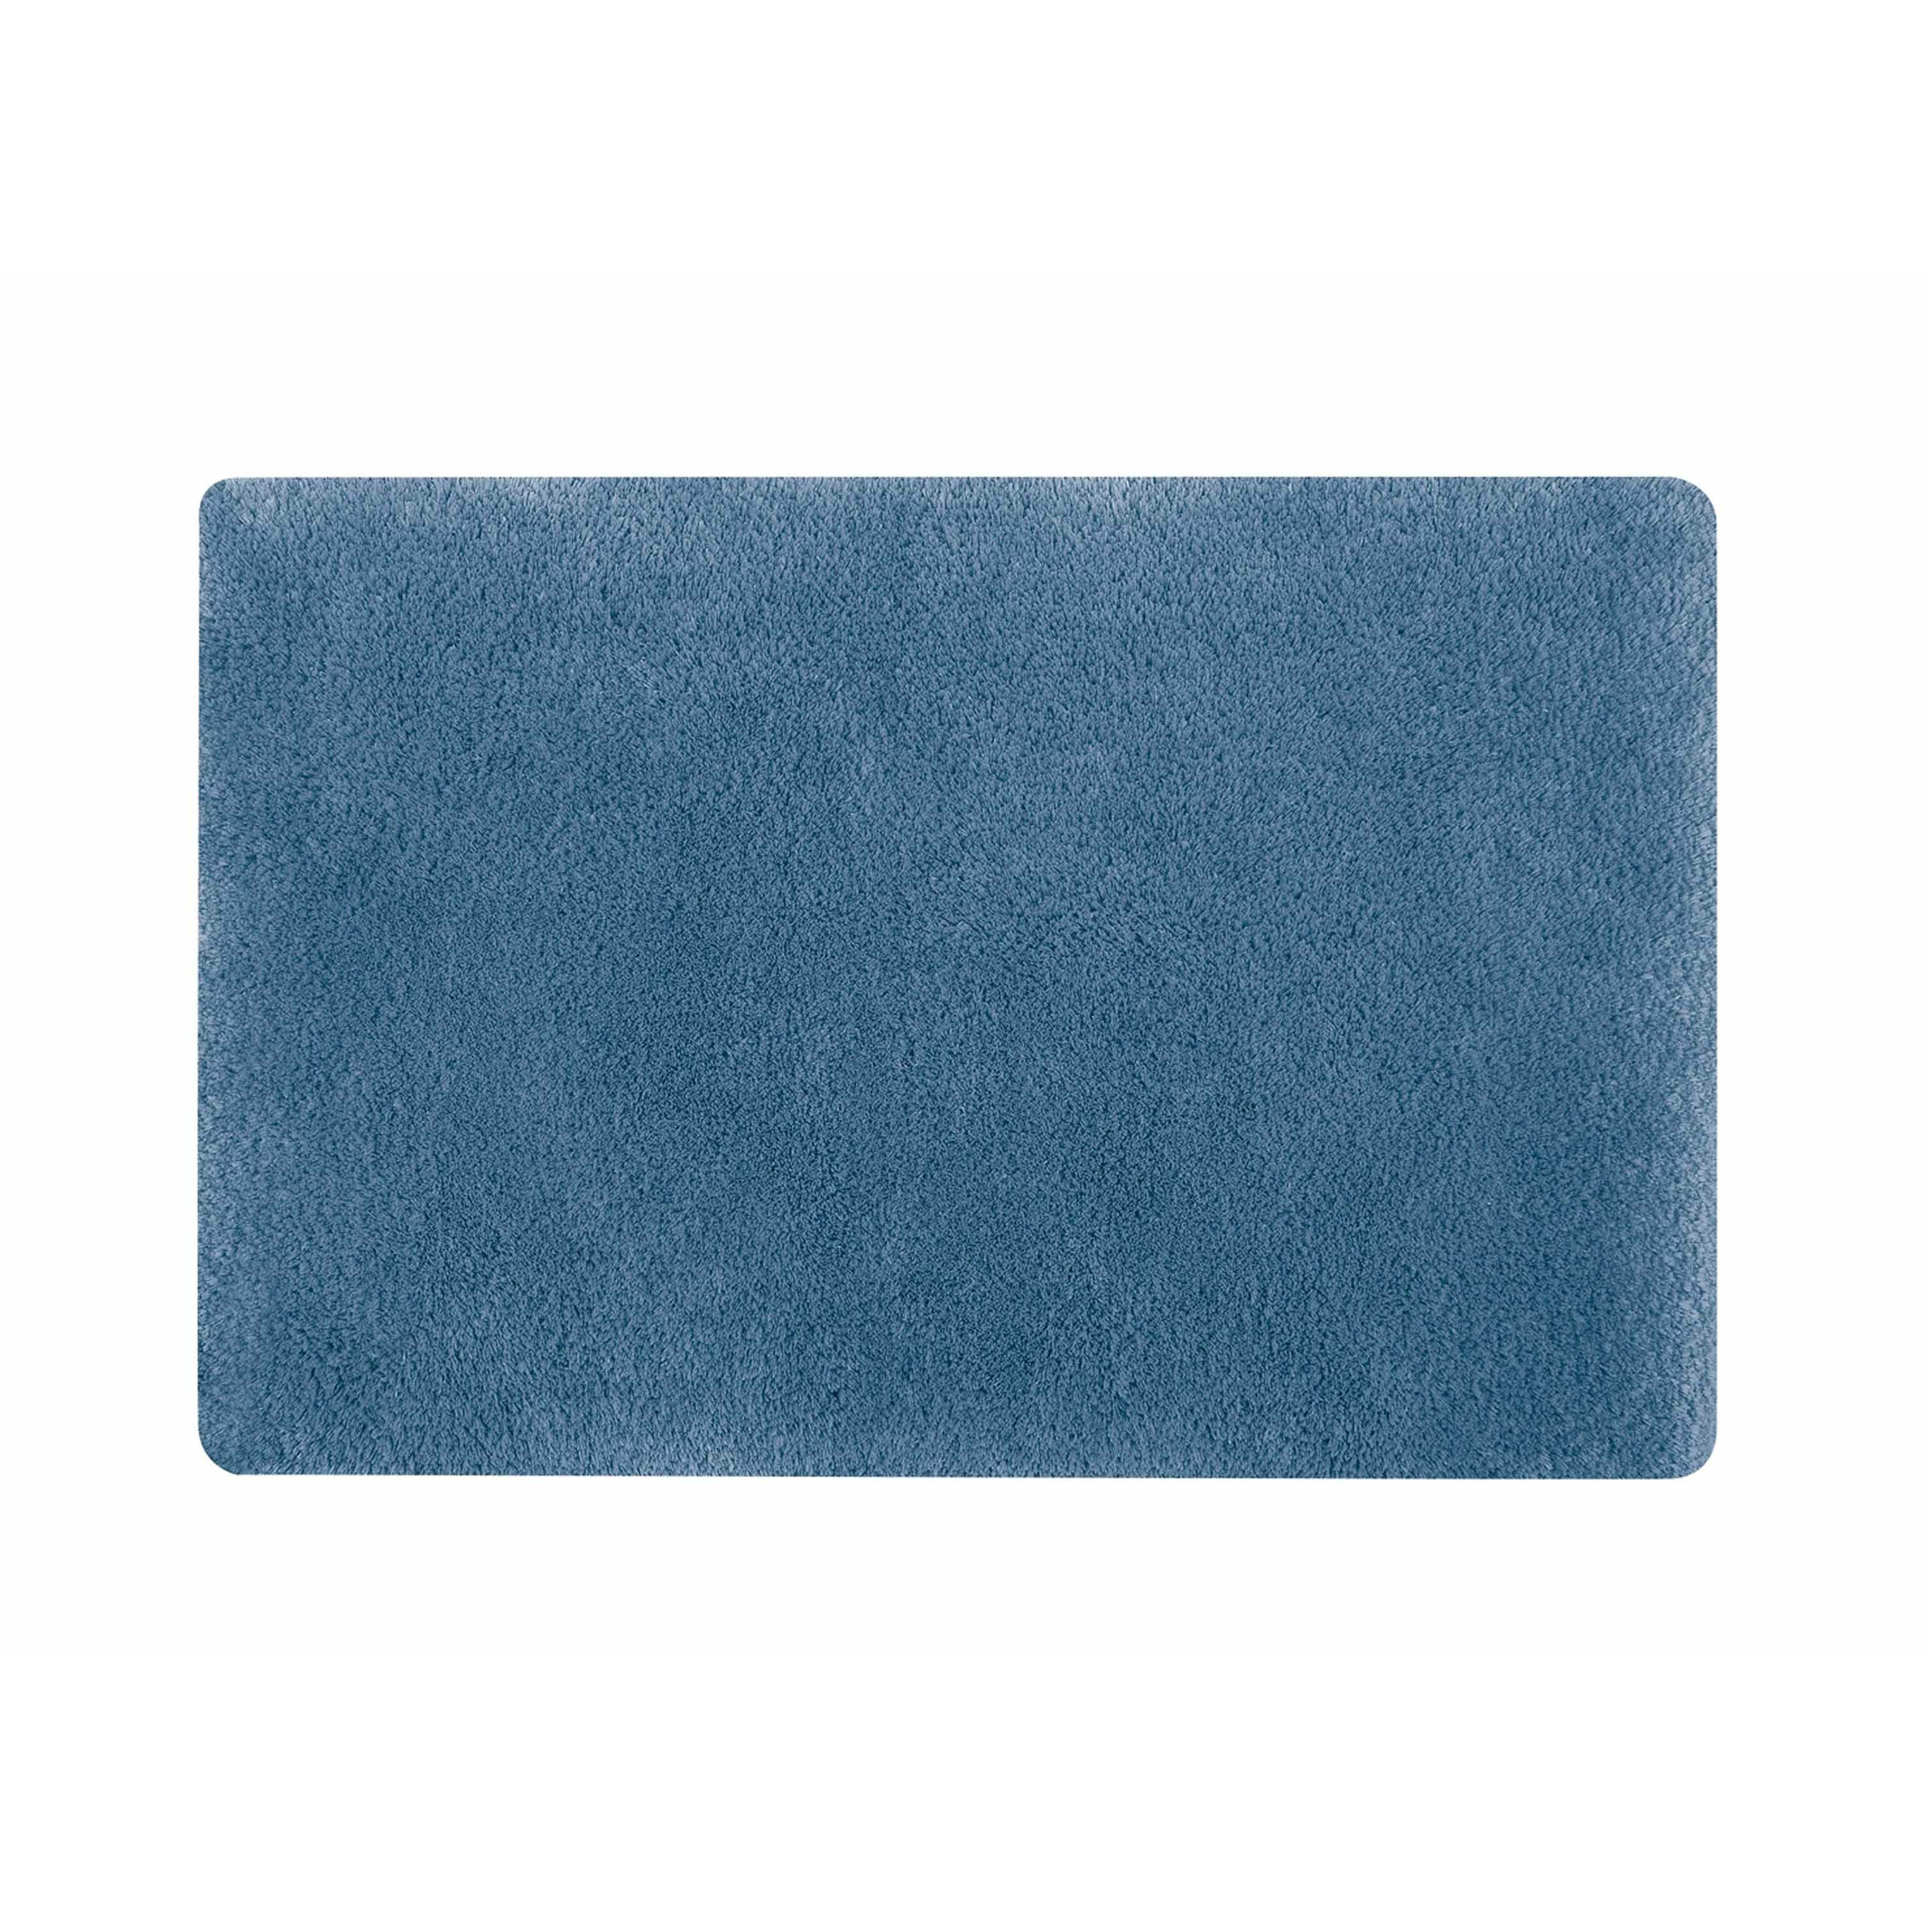 Spirella badkamer vloer kleedje-badmat tapijt hoogpolig en luxe uitvoering blauw 60 x 90 cm